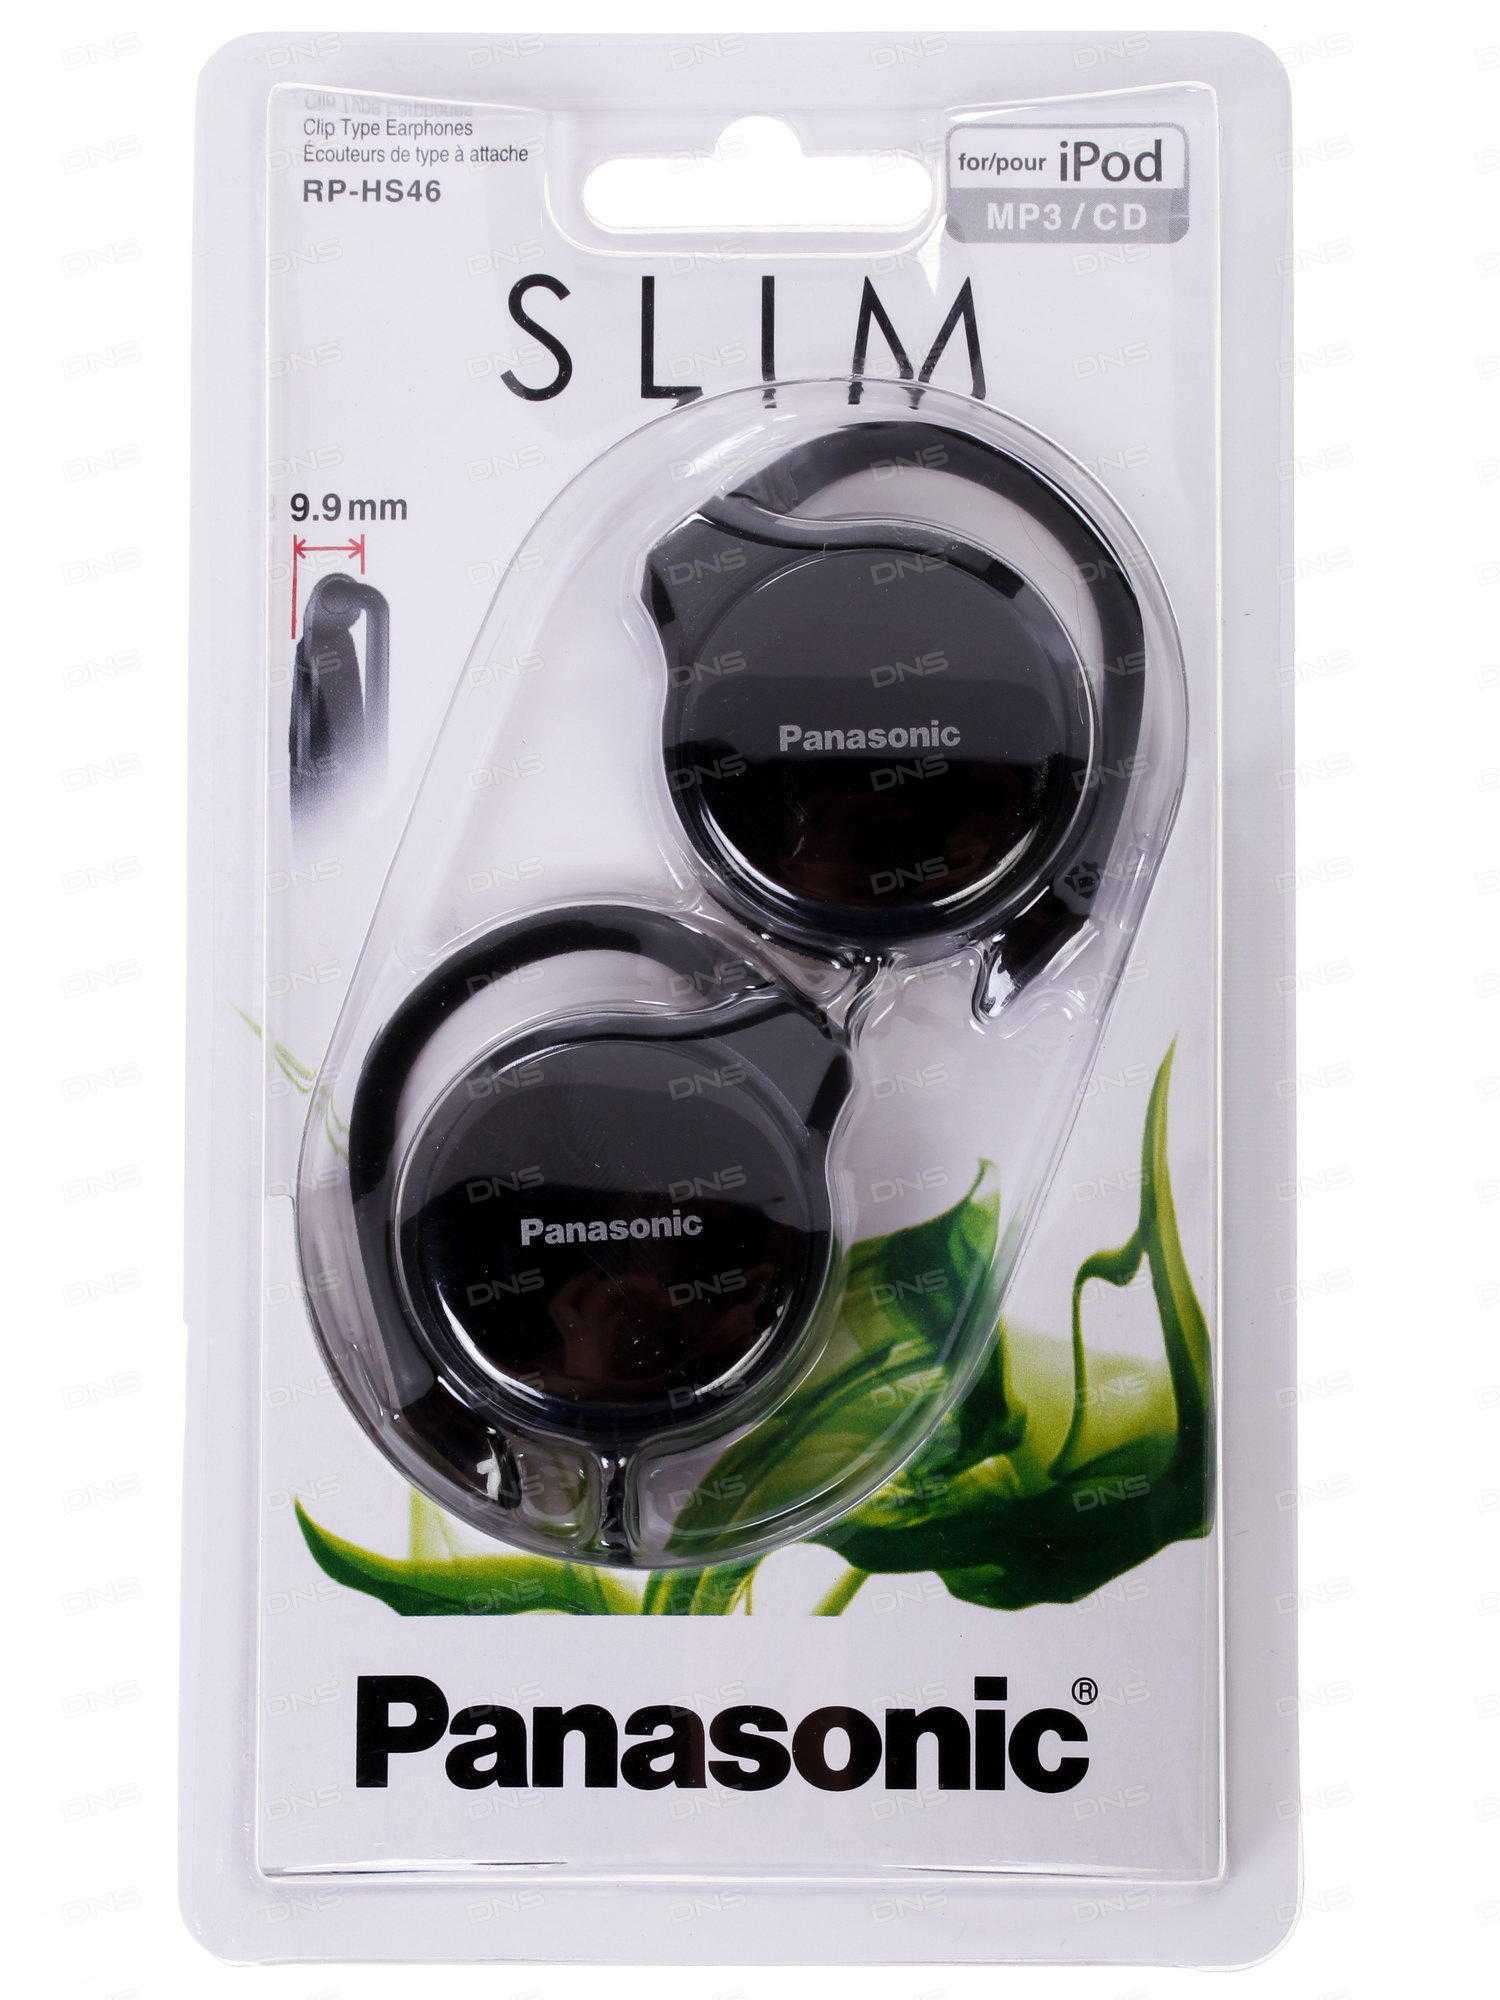 Panasonic rp-hxd5 - купить , скидки, цена, отзывы, обзор, характеристики - bluetooth гарнитуры и наушники